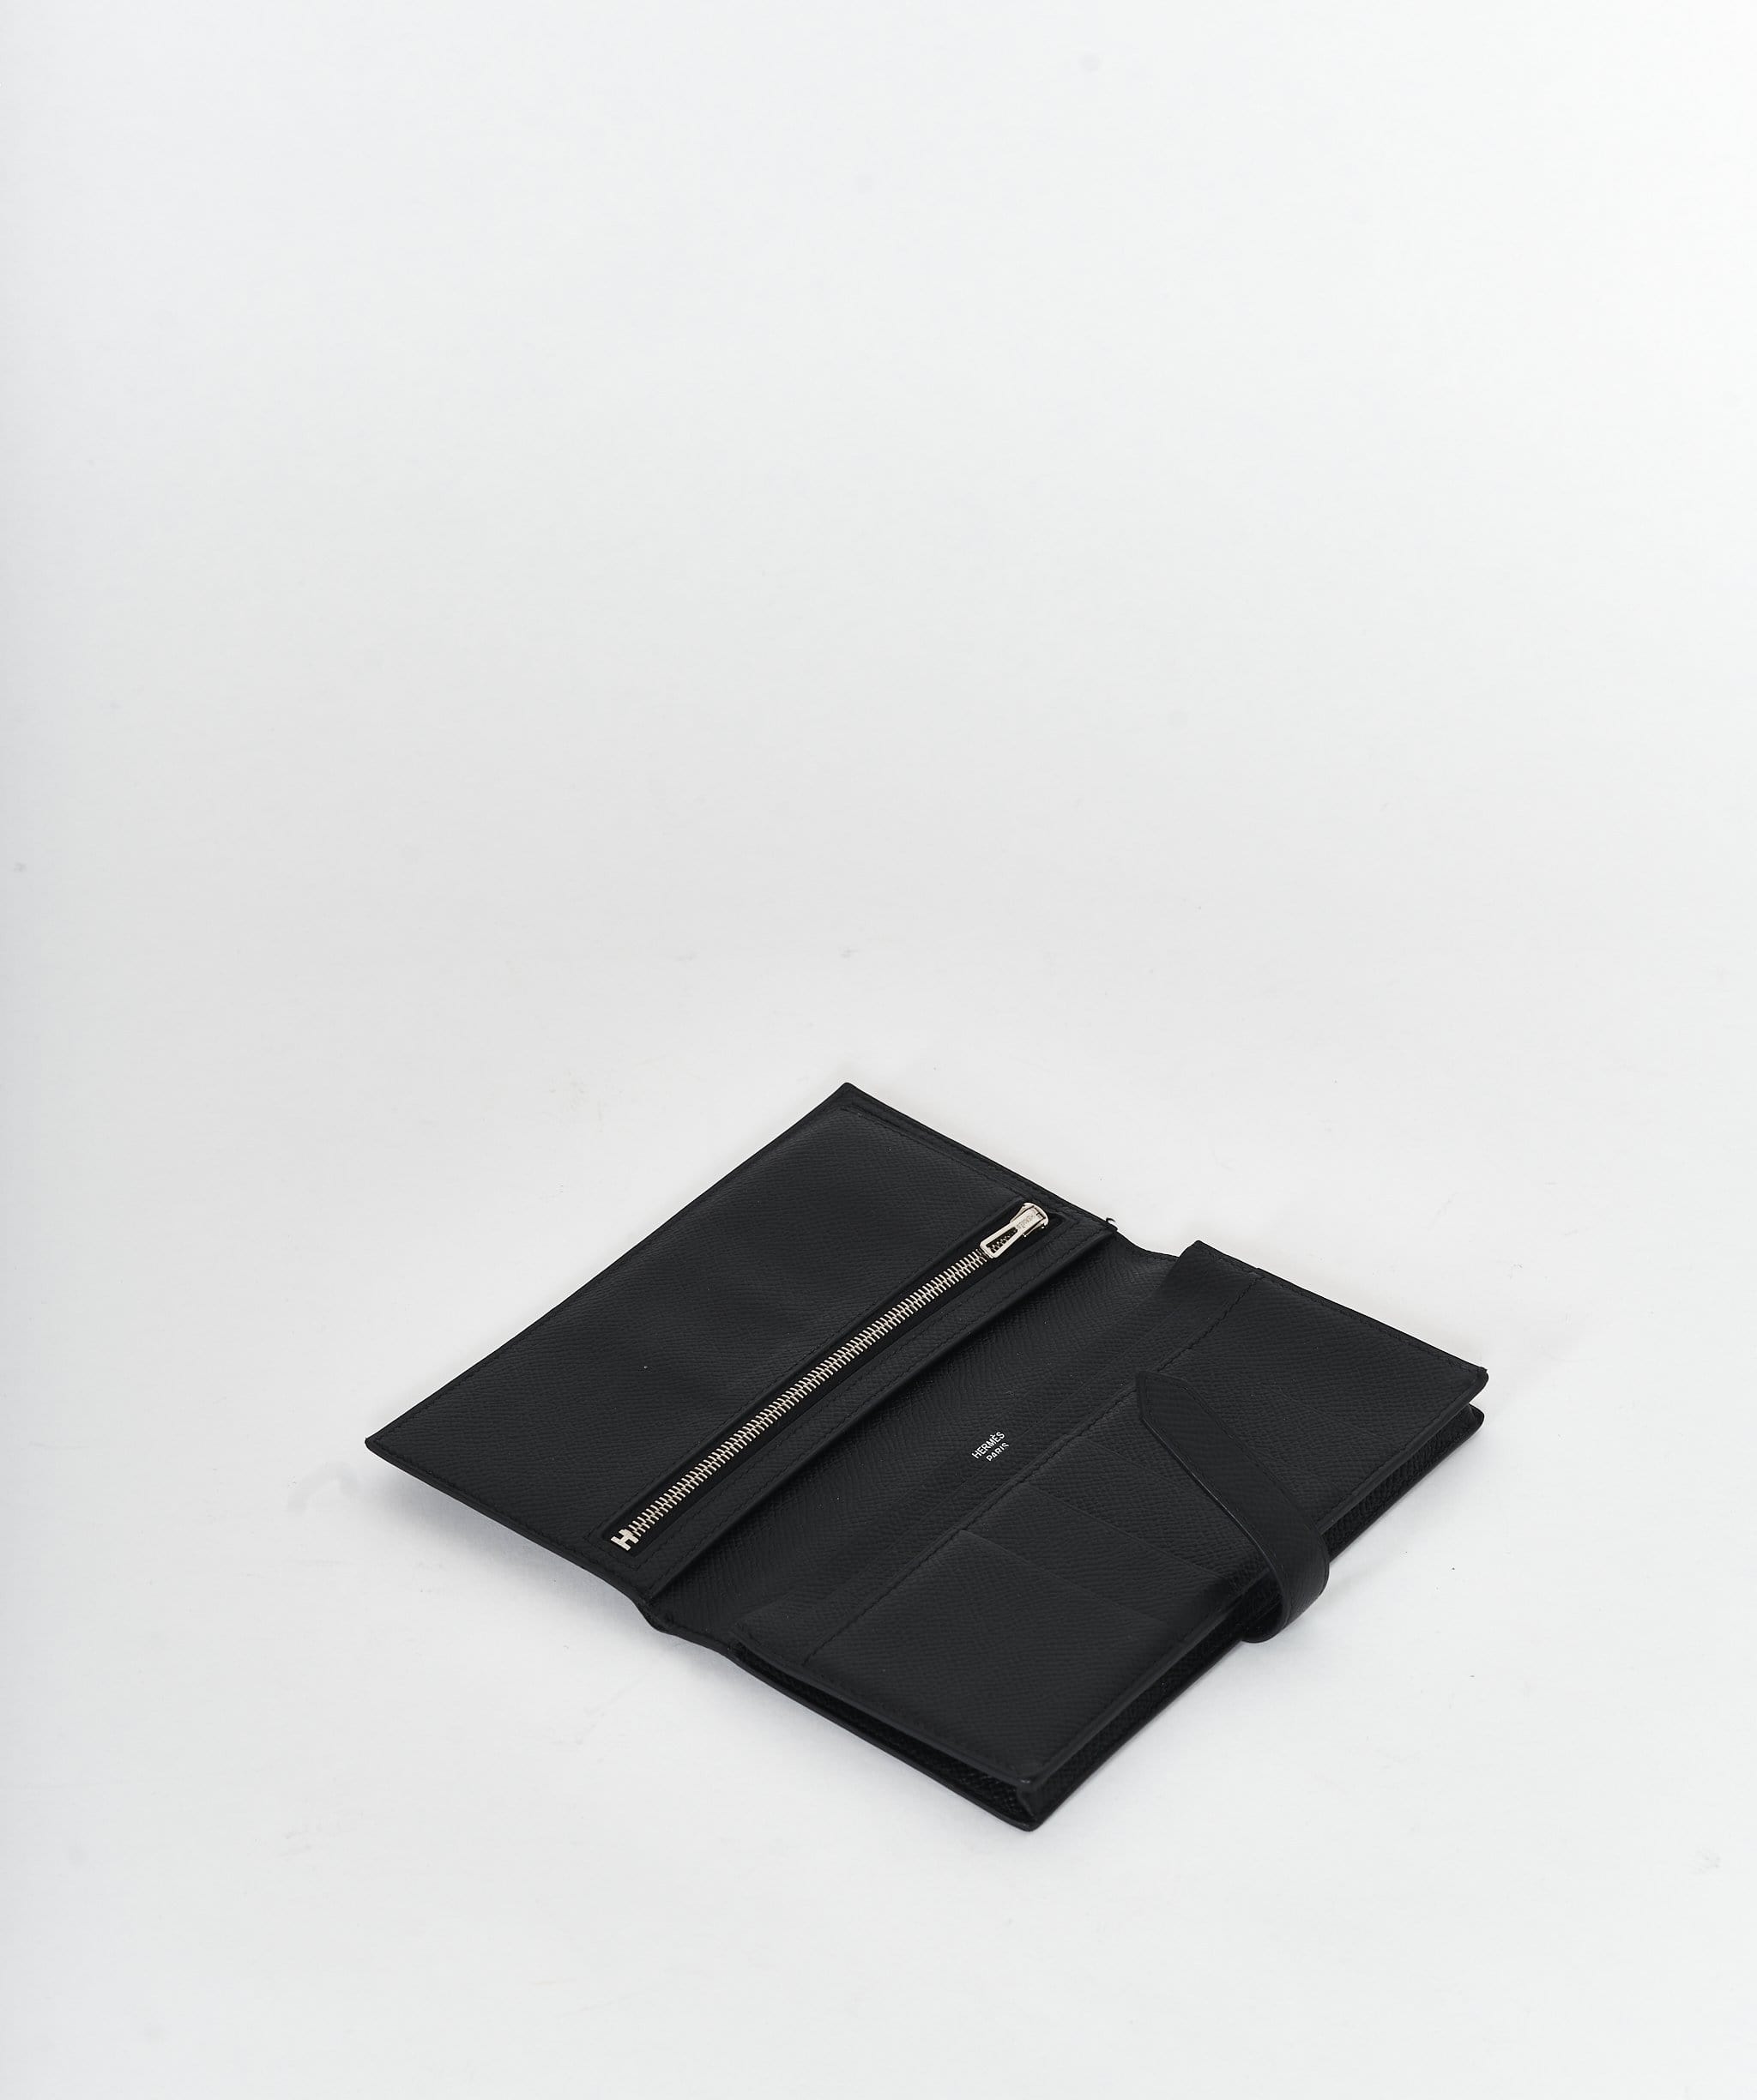 Hermès Hermes Bearn wallet in black